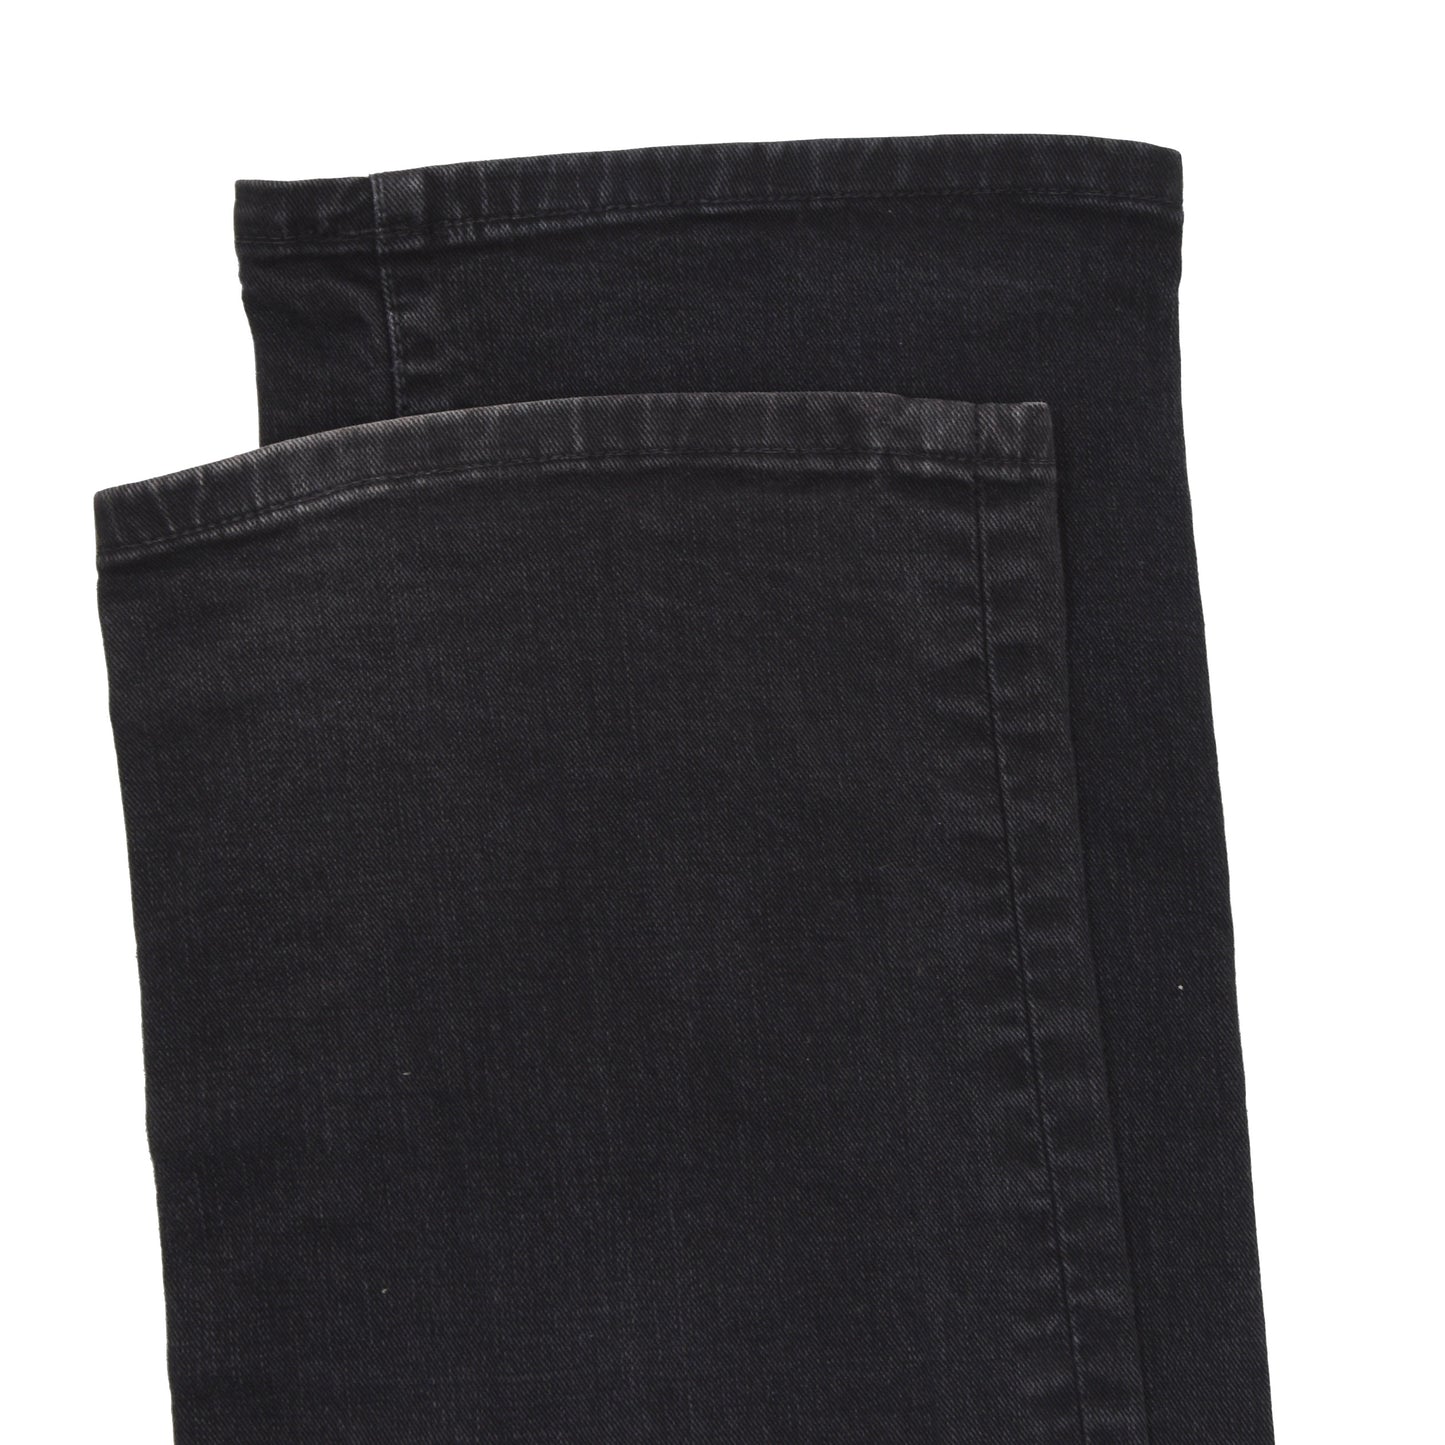 Jacob Cohen J620 Comfort Jeans Größe 32